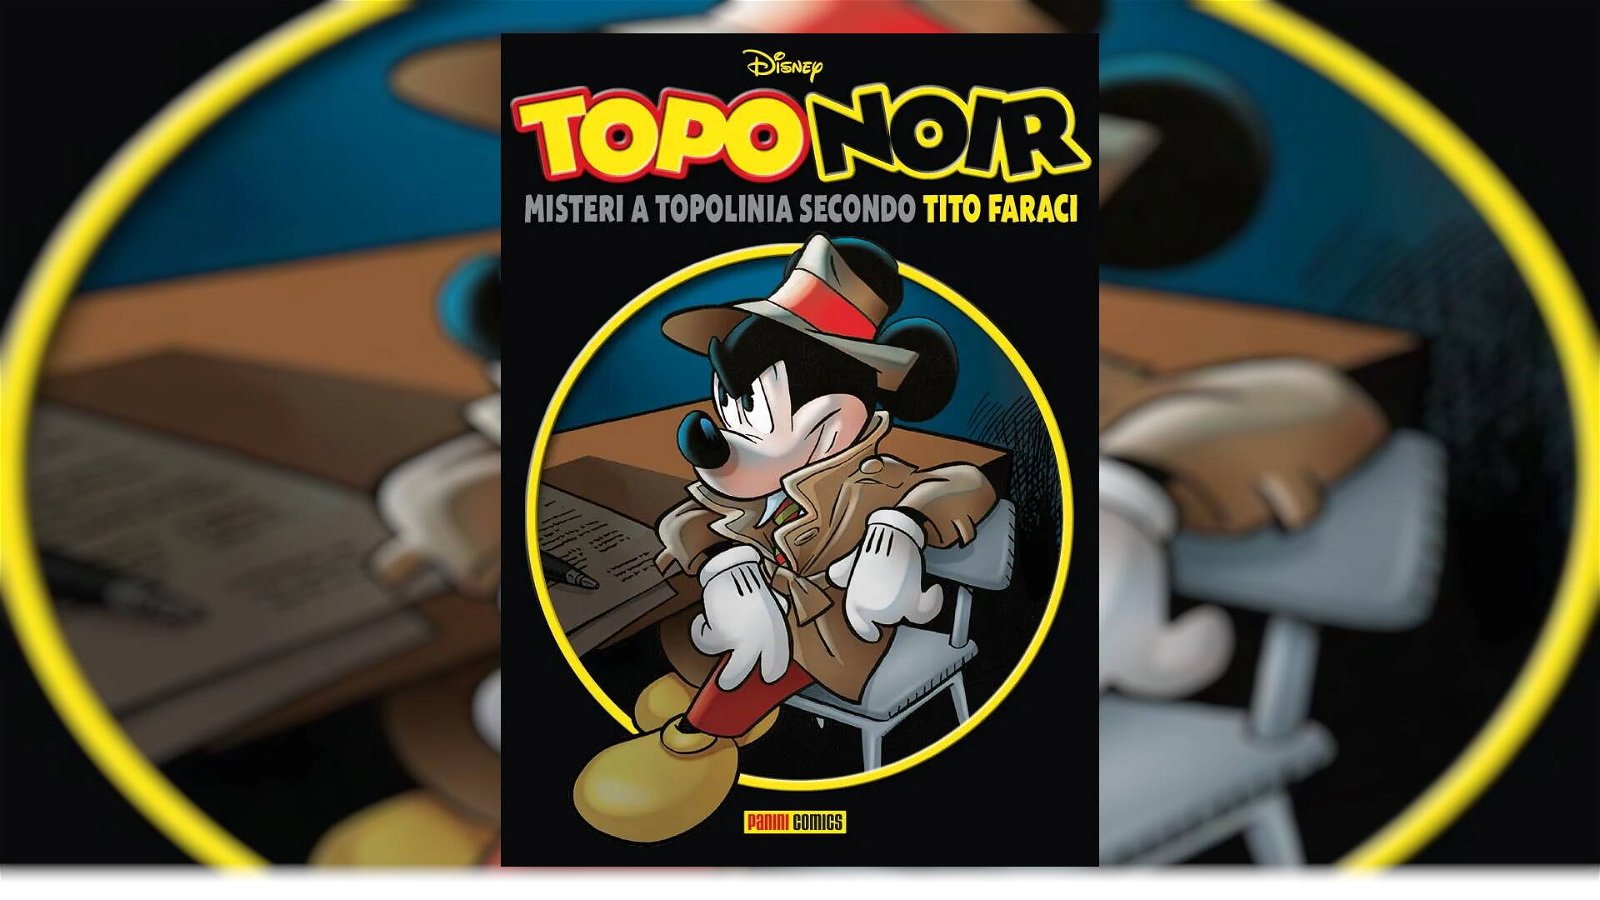 Immagine di TopoNoir 1: misteri Disney secondo Tito Faraci, la recensione